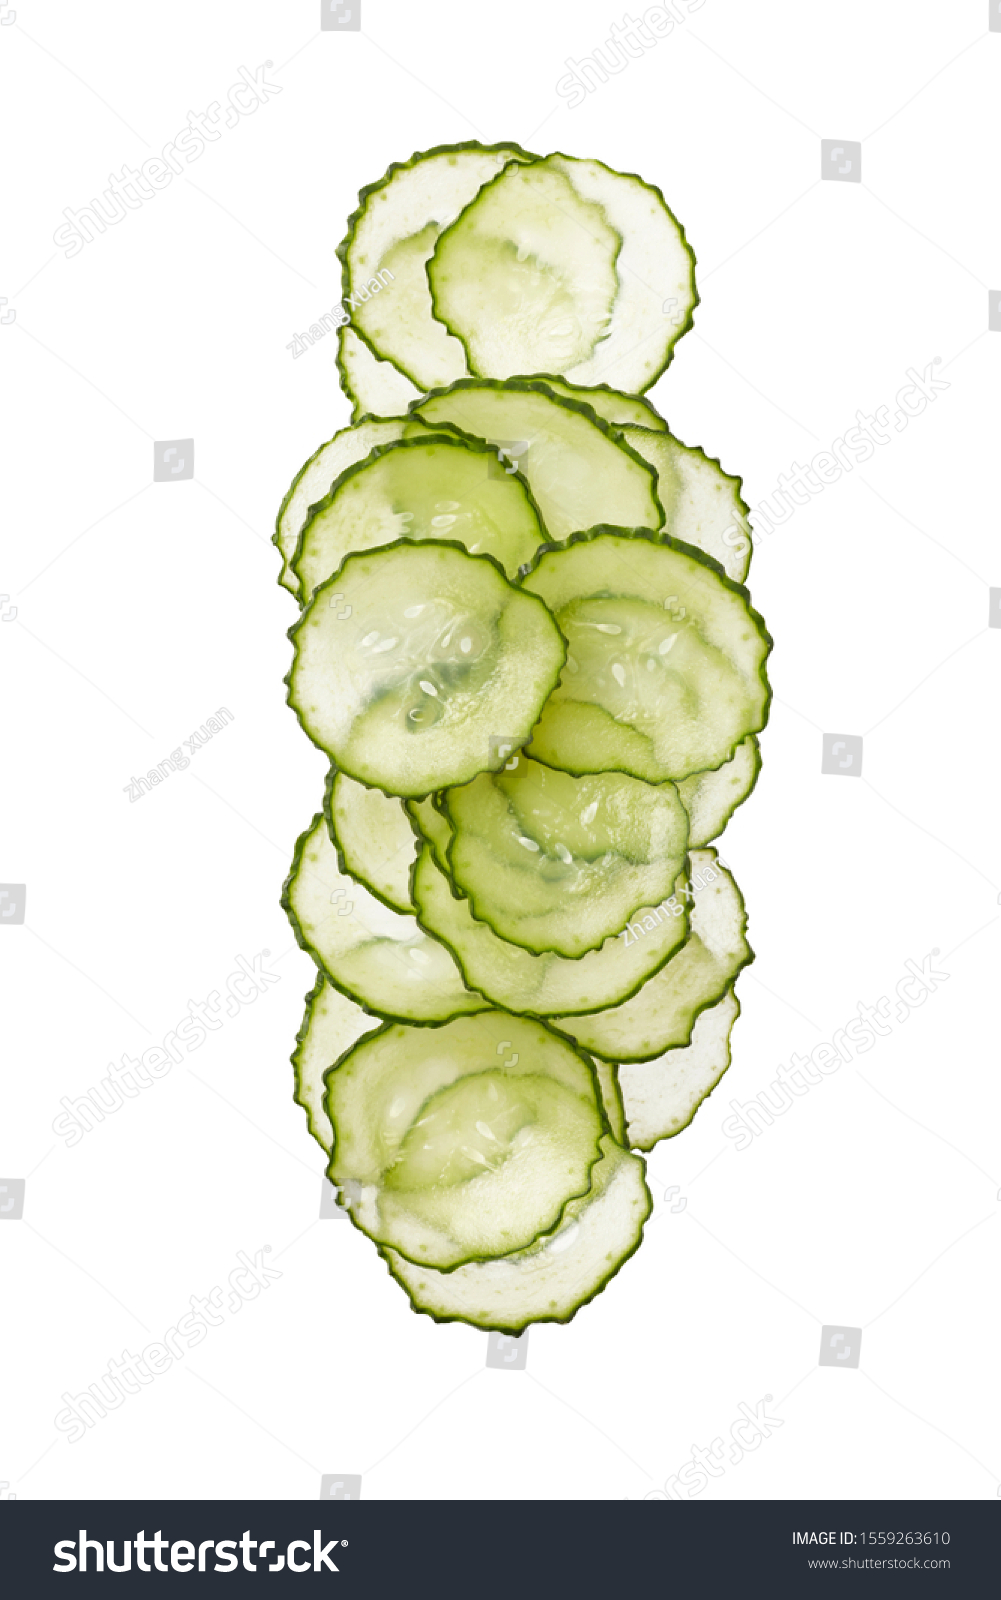 Fresh slice cucumber on white background #1559263610